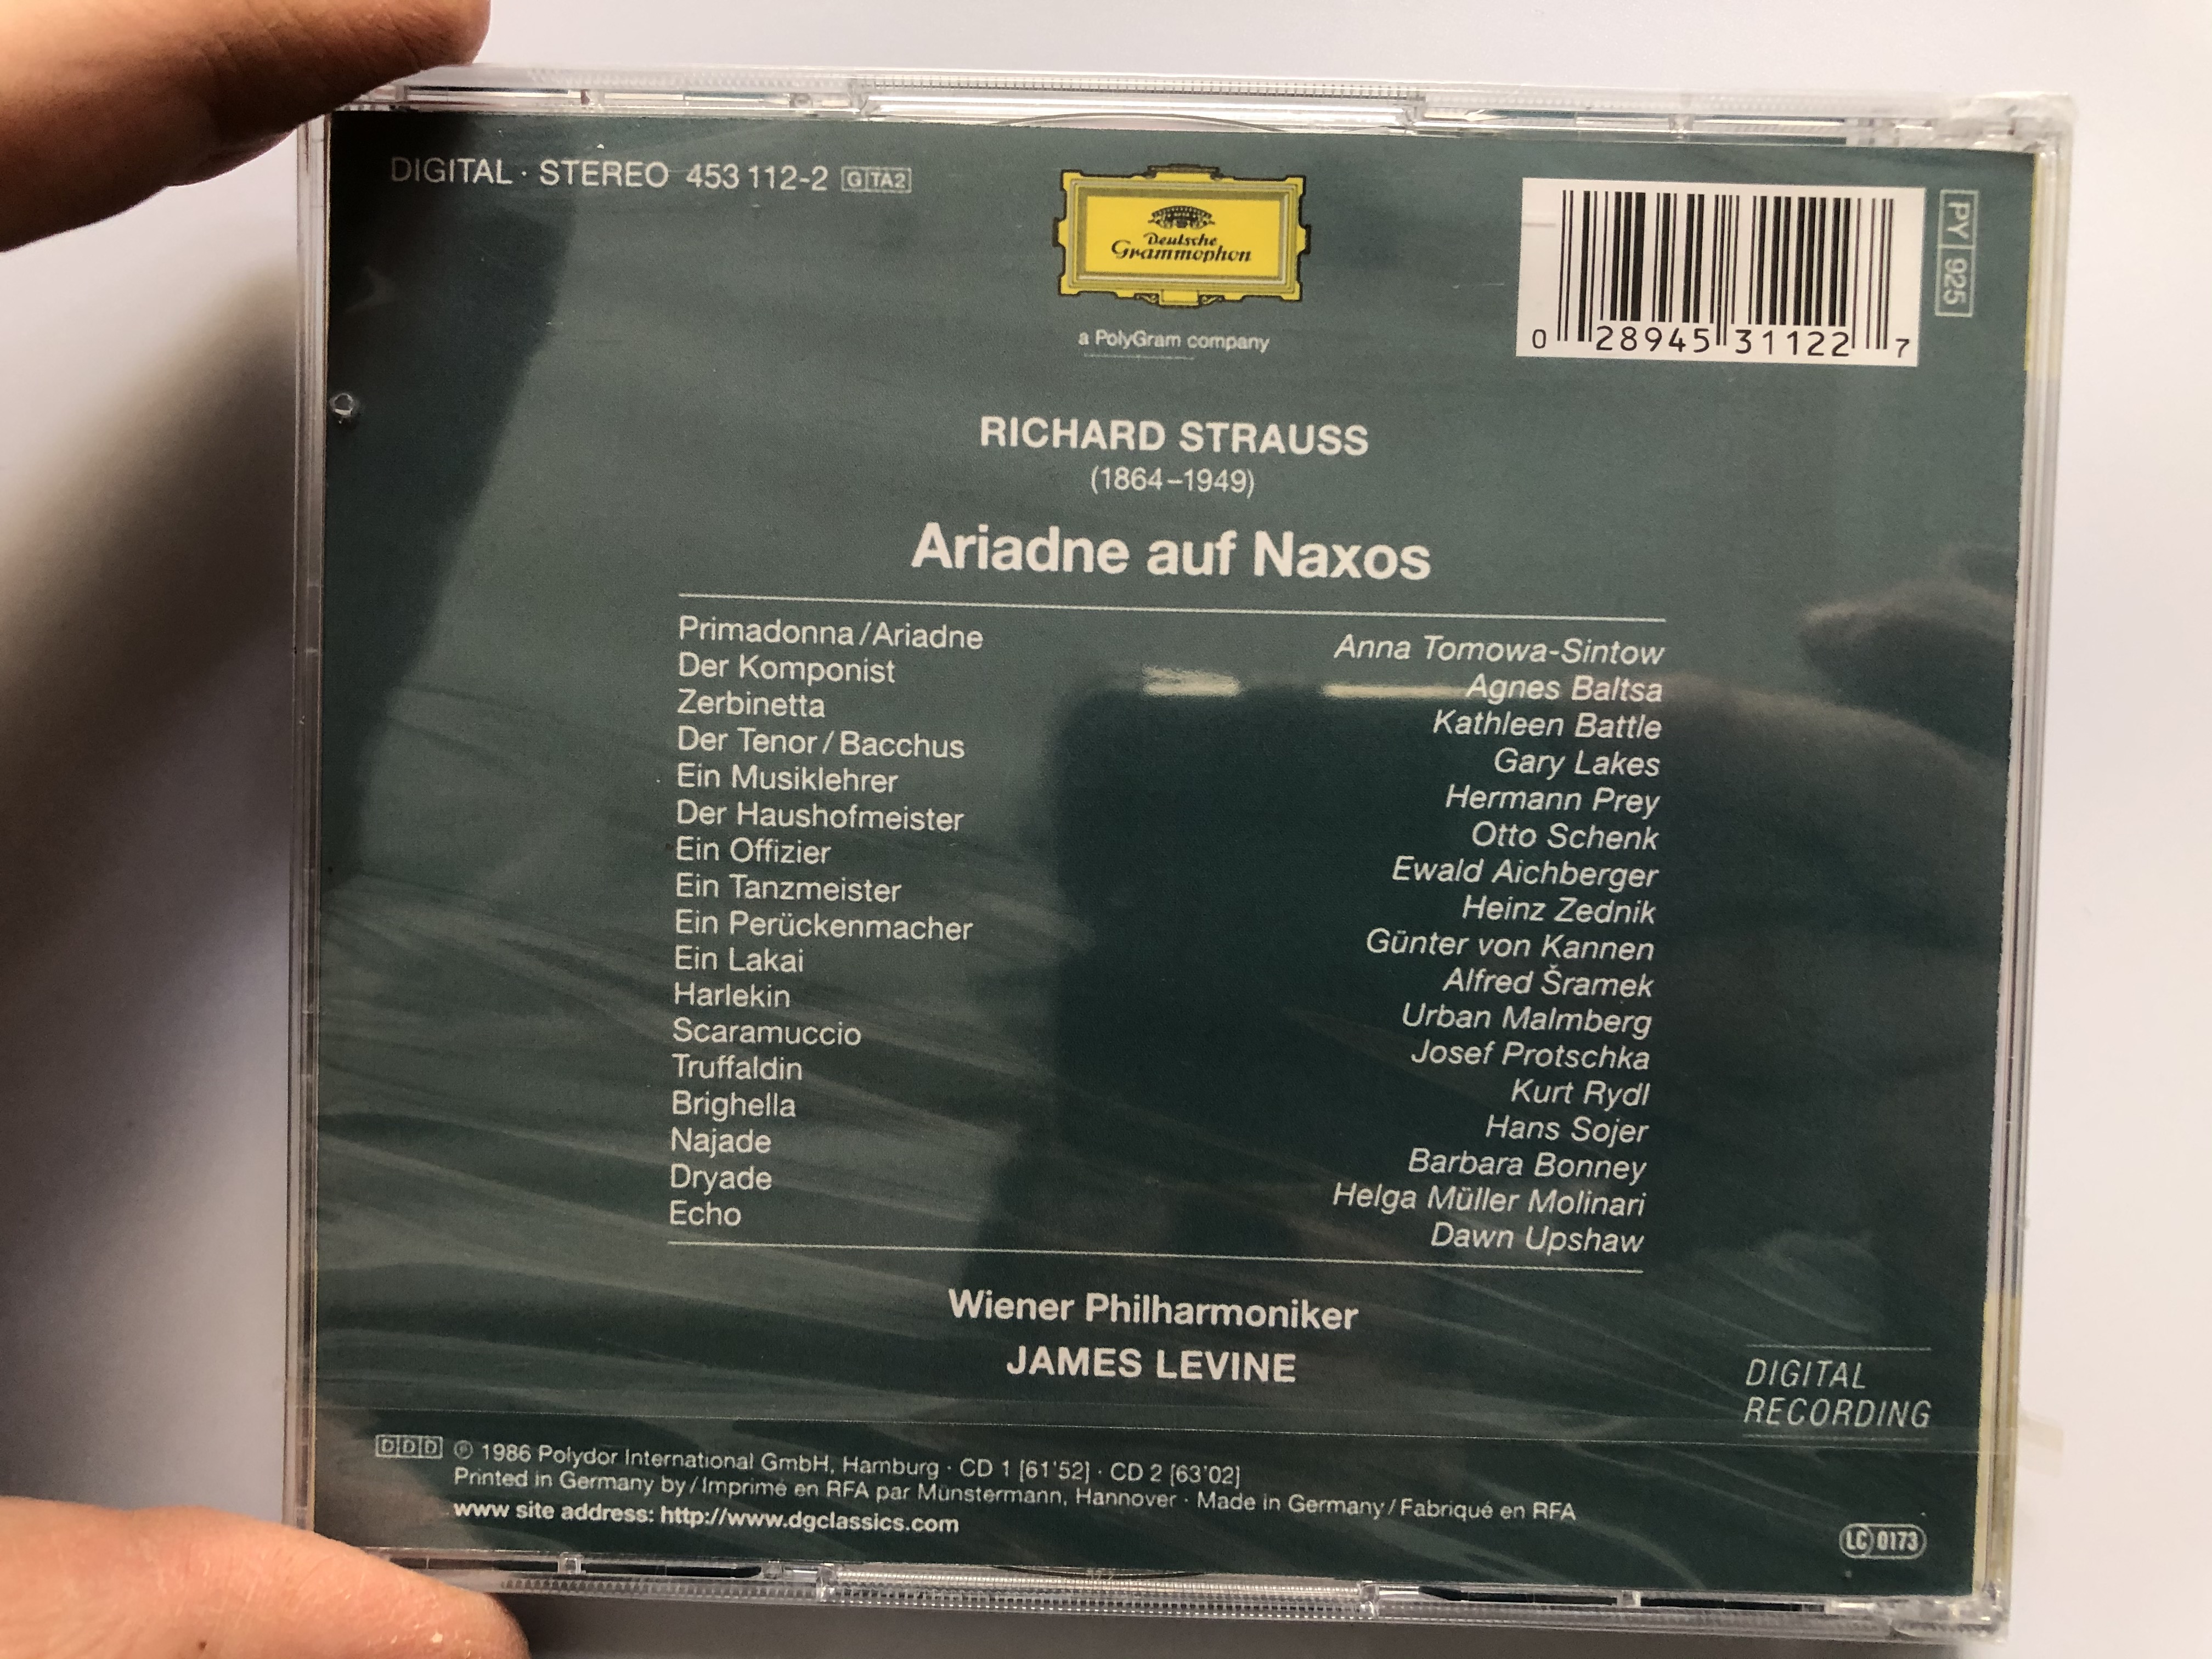 strauss-ariadne-auf-naxos-tomowa-sintow-battle-baltsa-lakes-prey-wiener-philharmoniker-james-levine-deutsche-grammophon-2x-audio-cd-stereo-453-112-2-2-.jpg